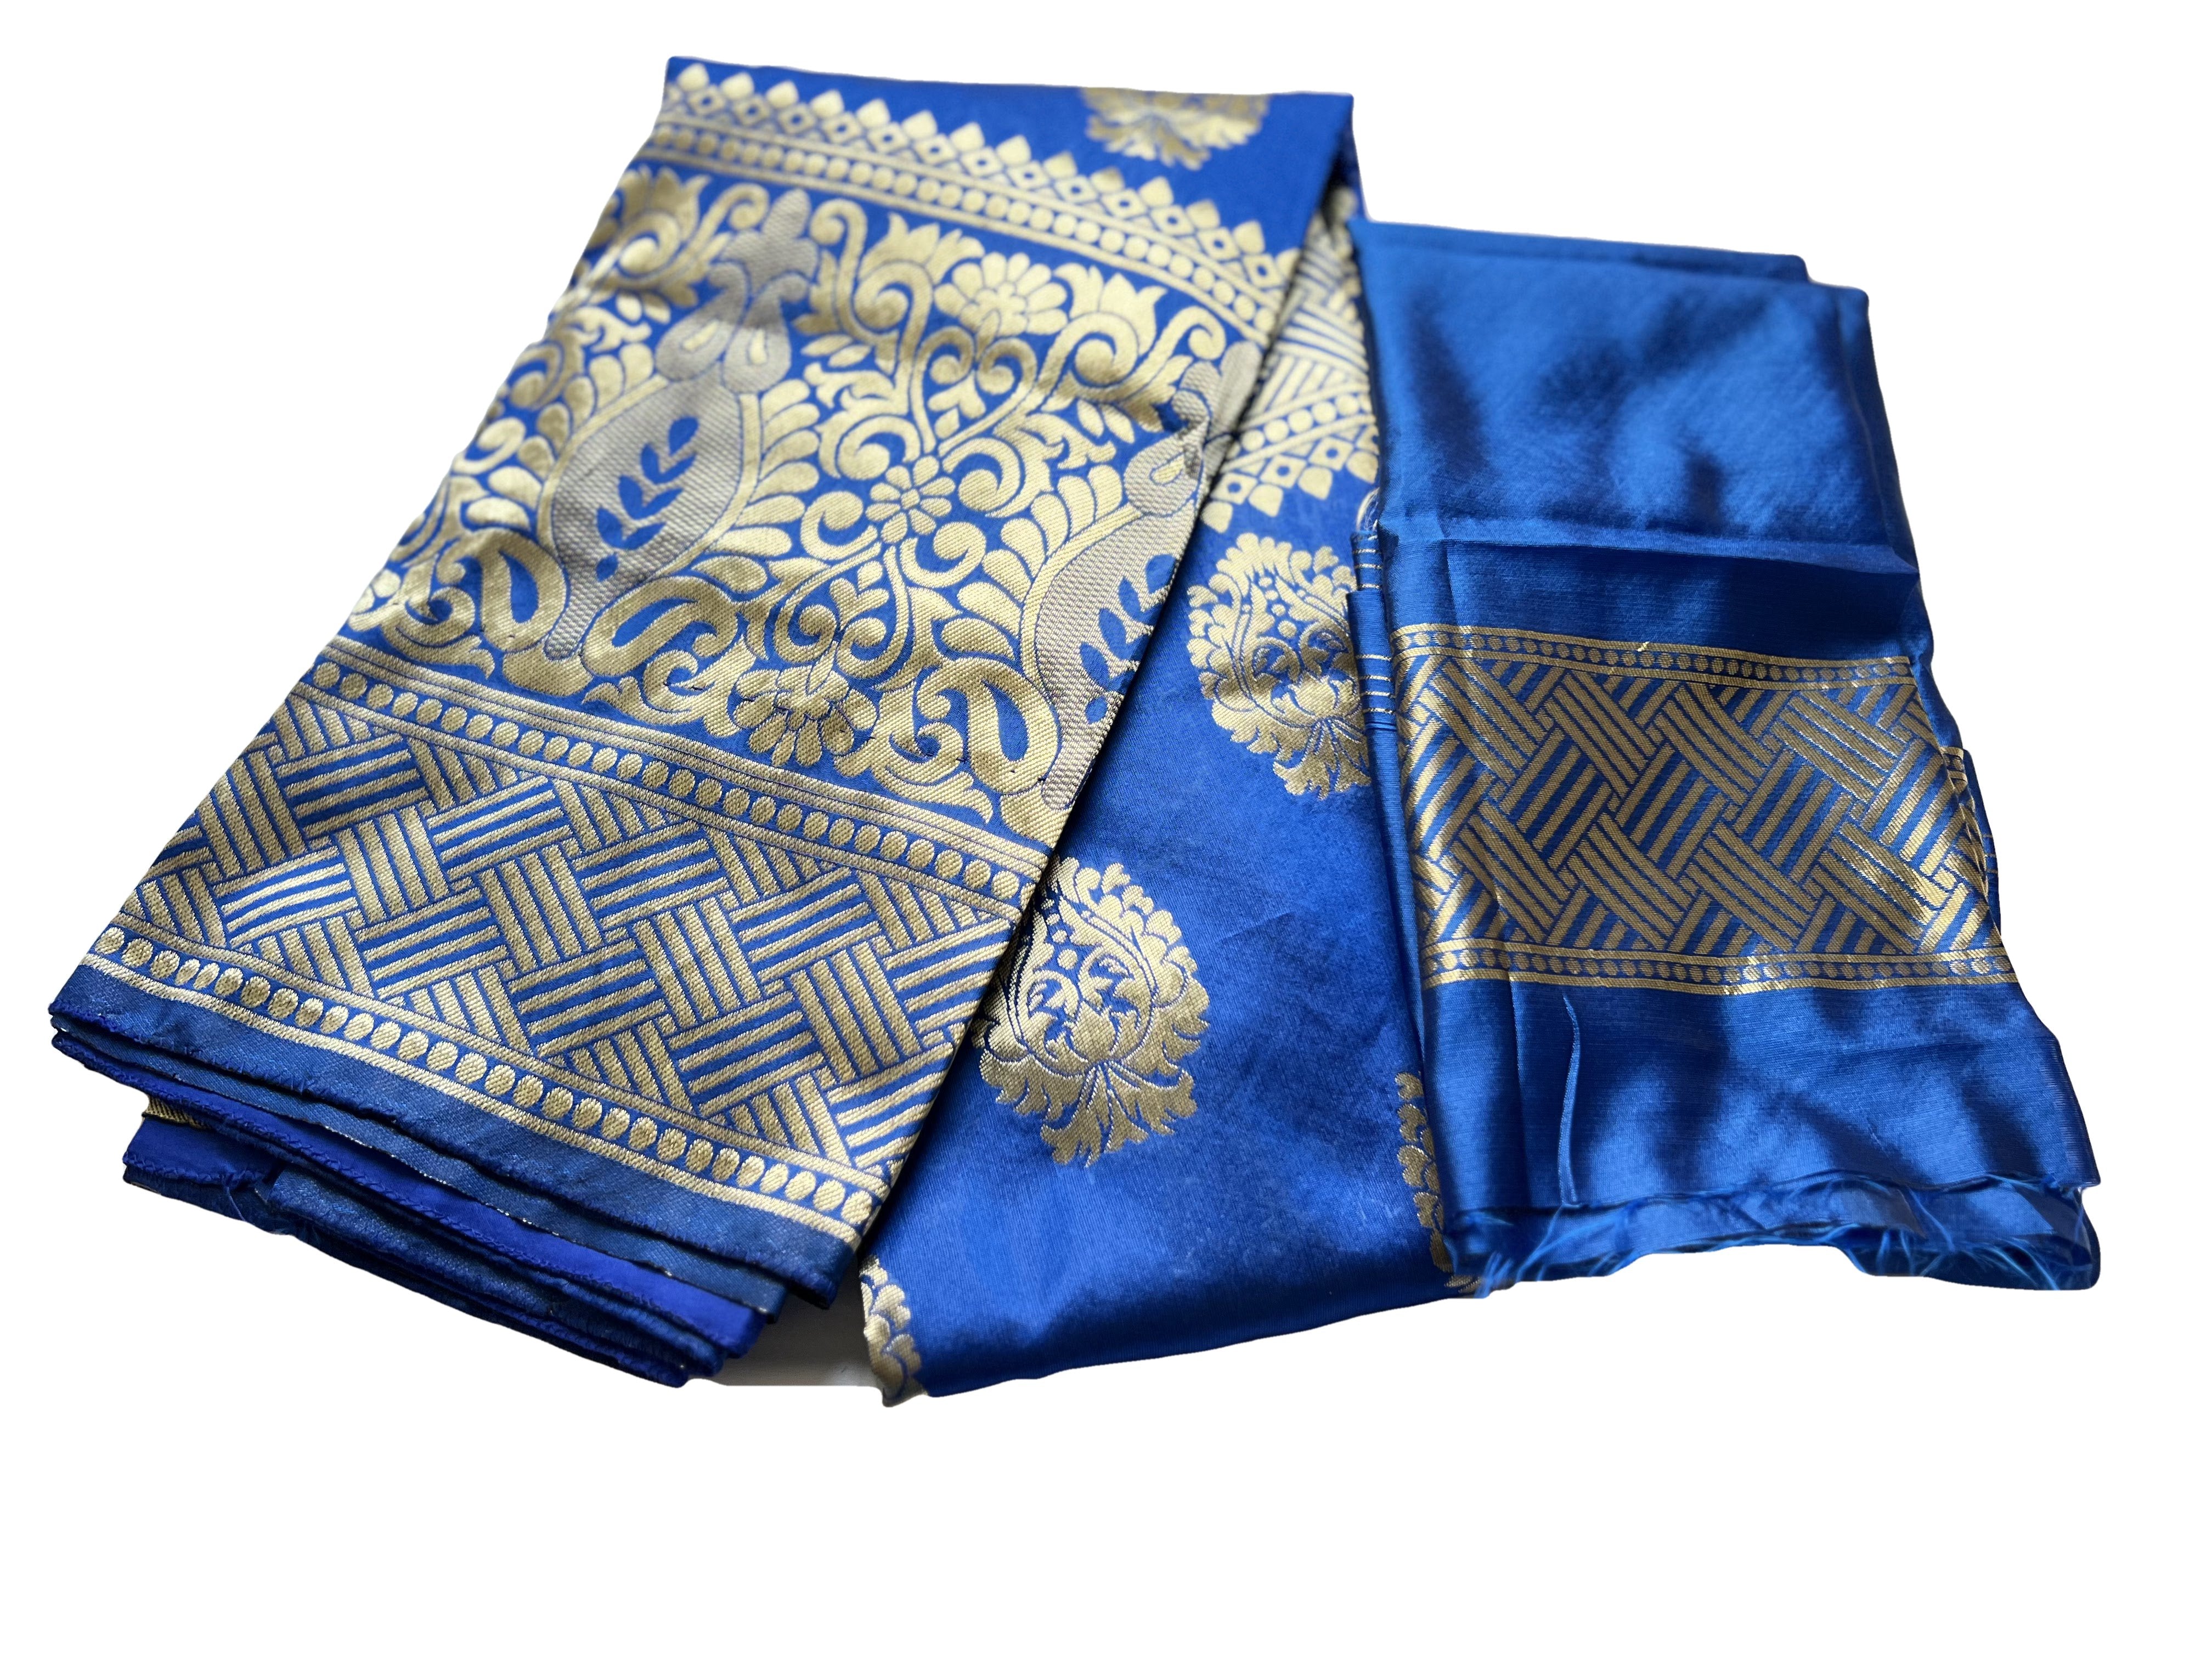 Blue Color - Banarasi Silk Saree, Gold Floral Design - Light Weight